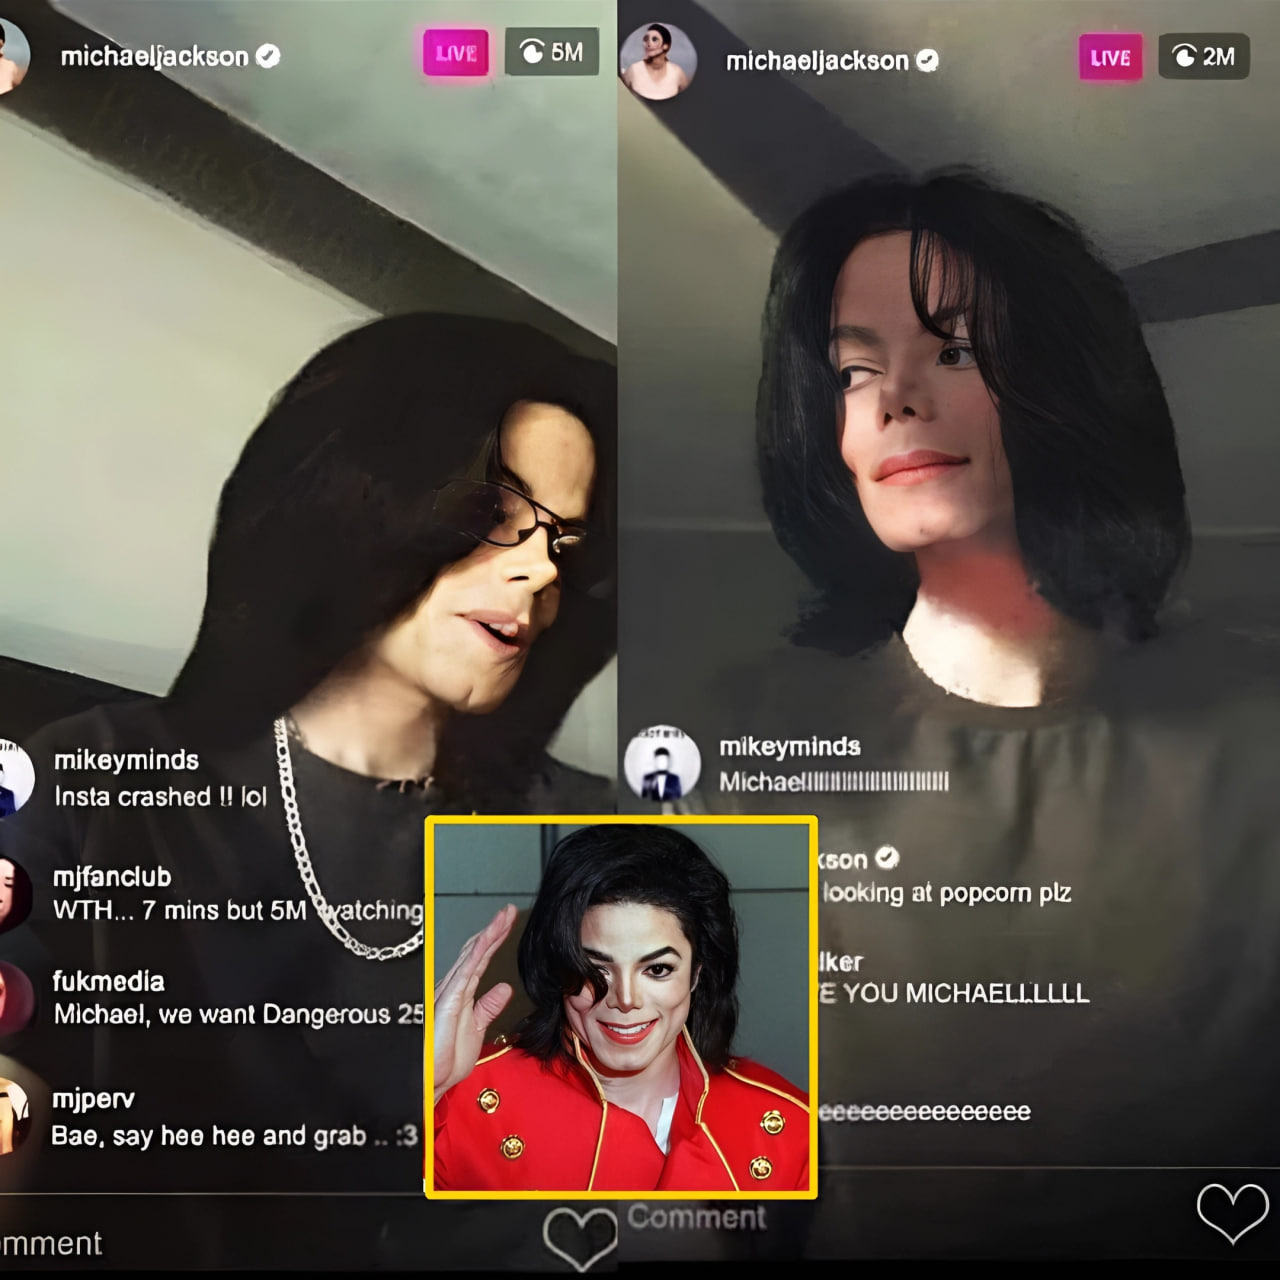 OMG! Adjustment time shock: Michael Jackson live Instagram really!!!